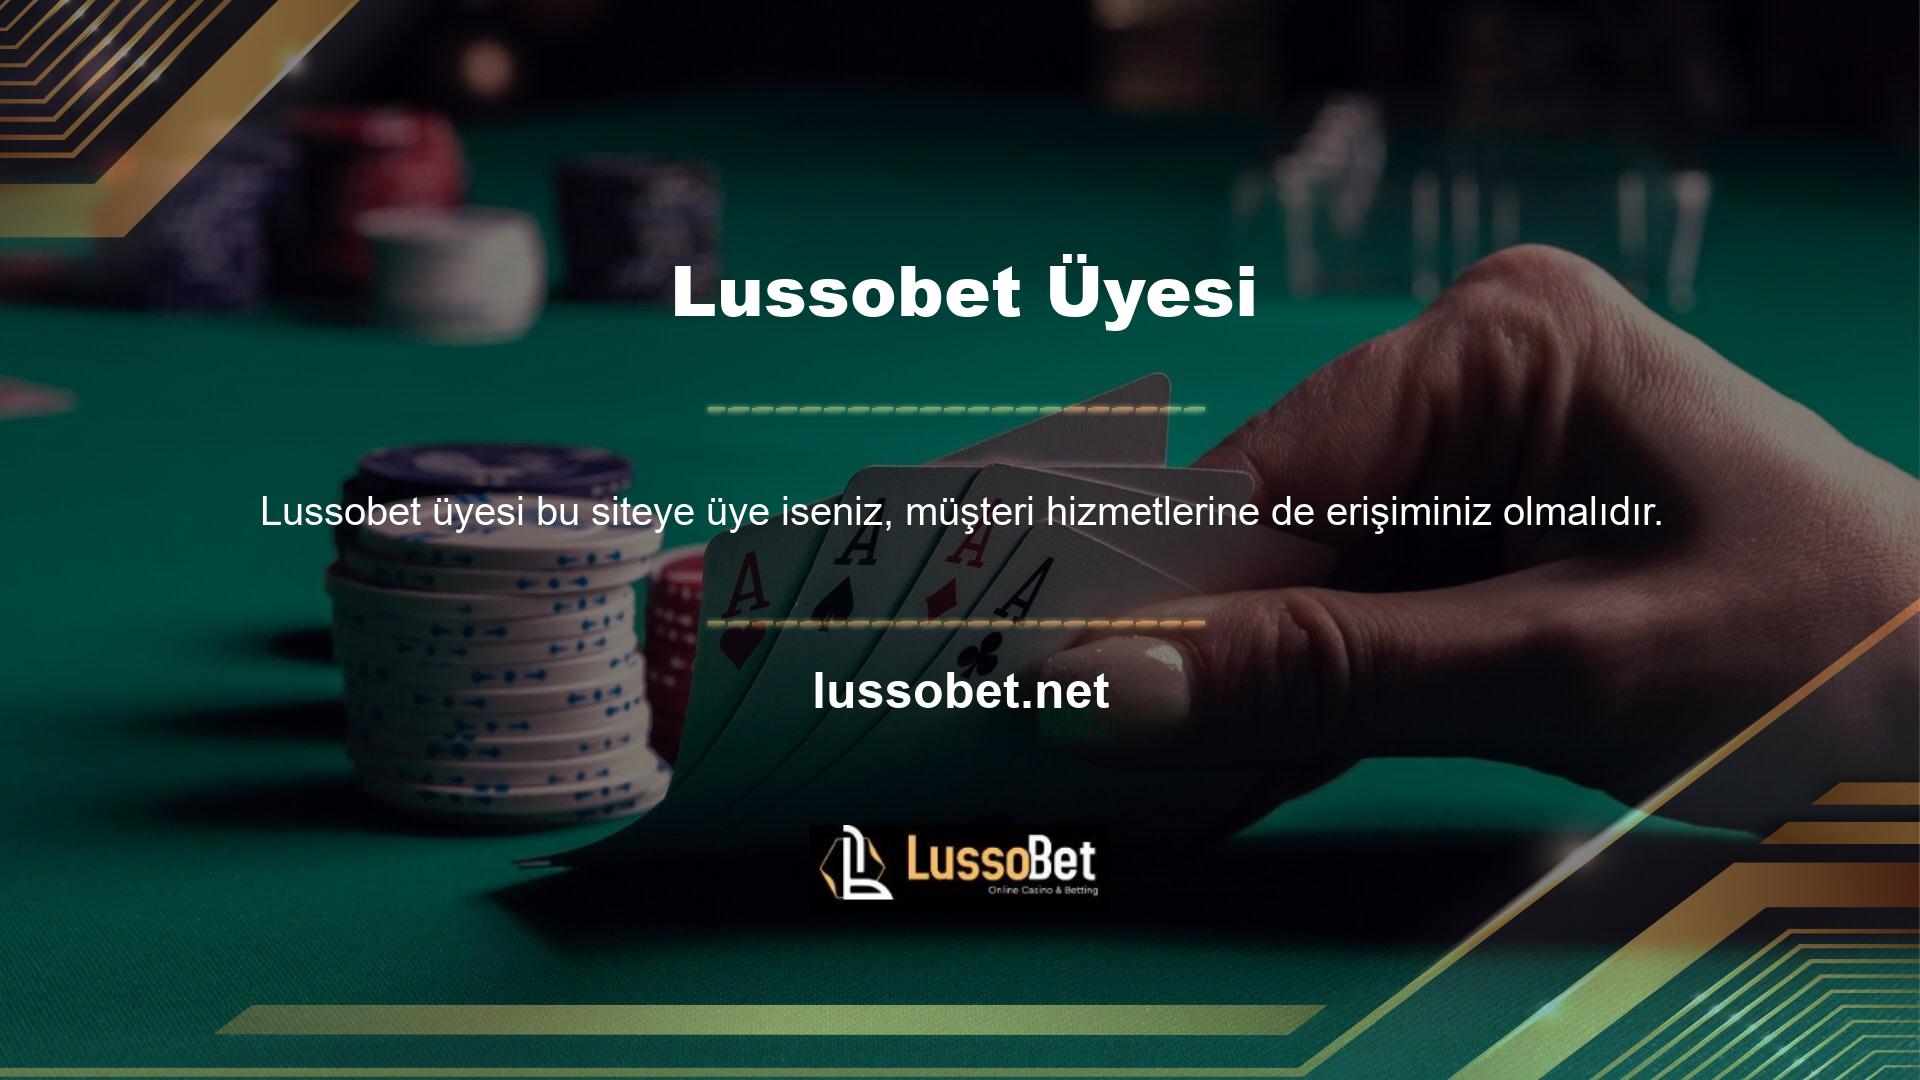 Lussobet Müşteri Hizmetleri, kullanıcılarına kapsamlı hizmet sunmaya çalışmaktadır